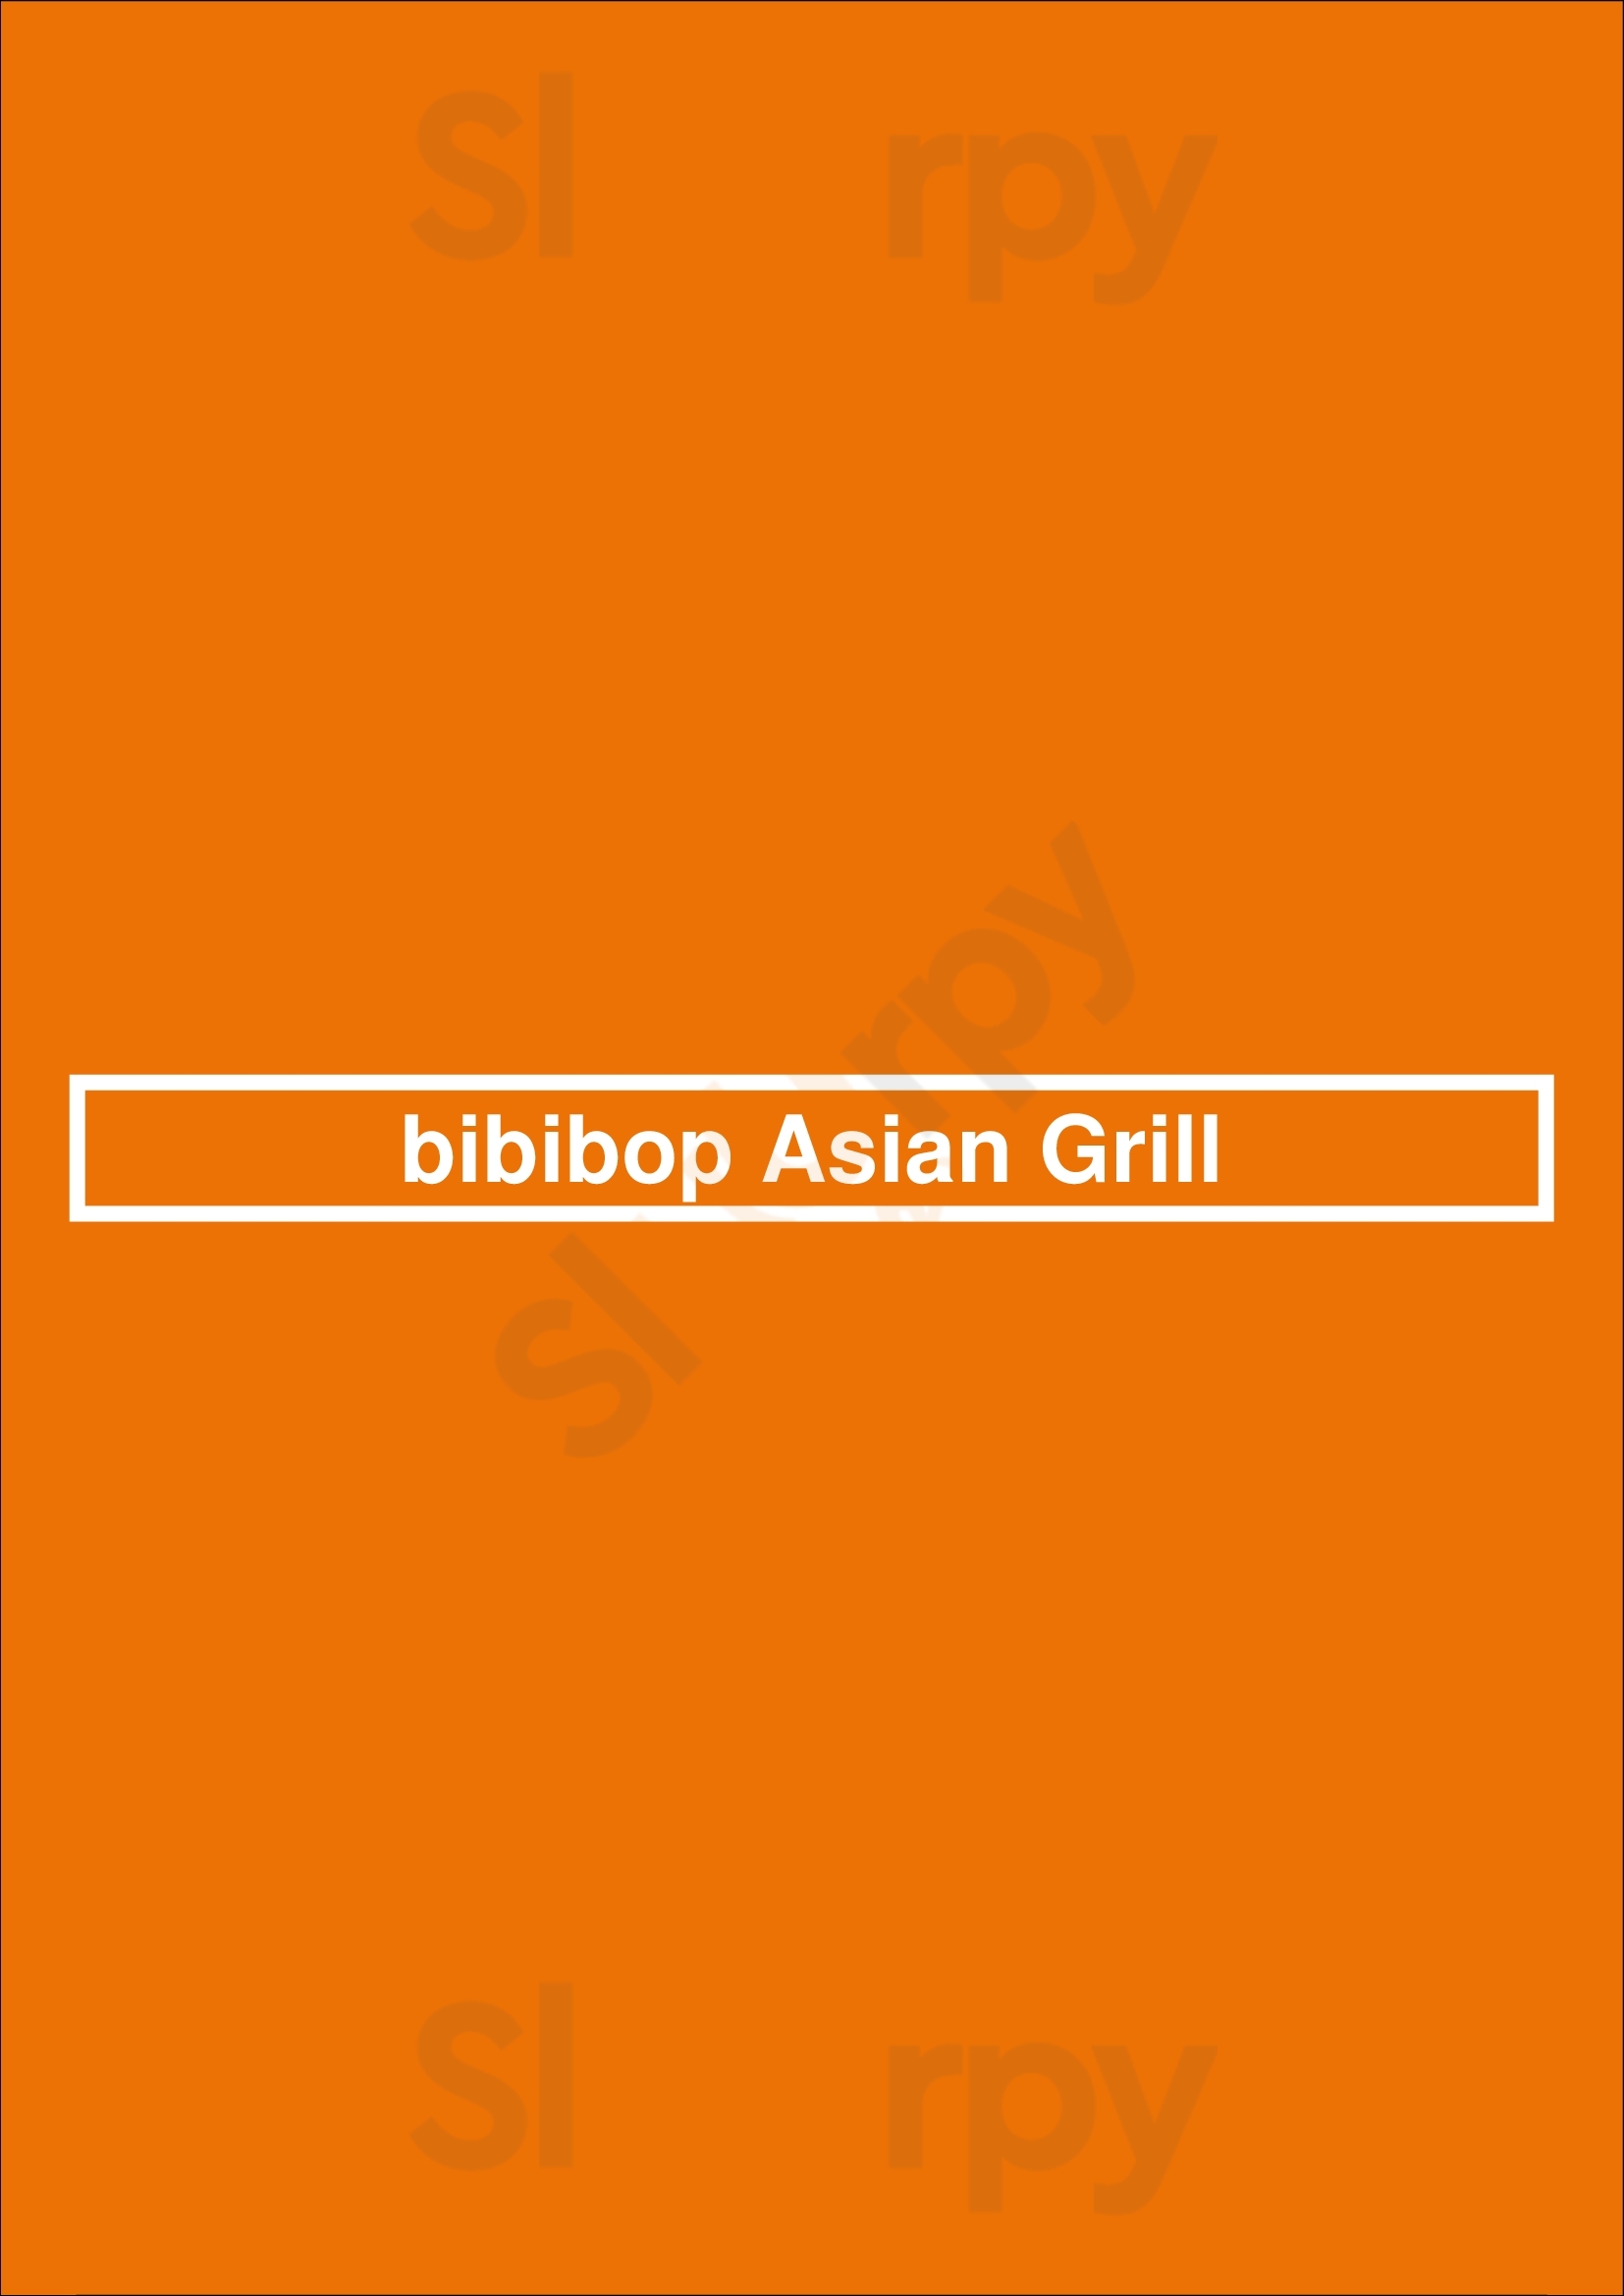 Bibibop Asian Grill Washington DC Menu - 1